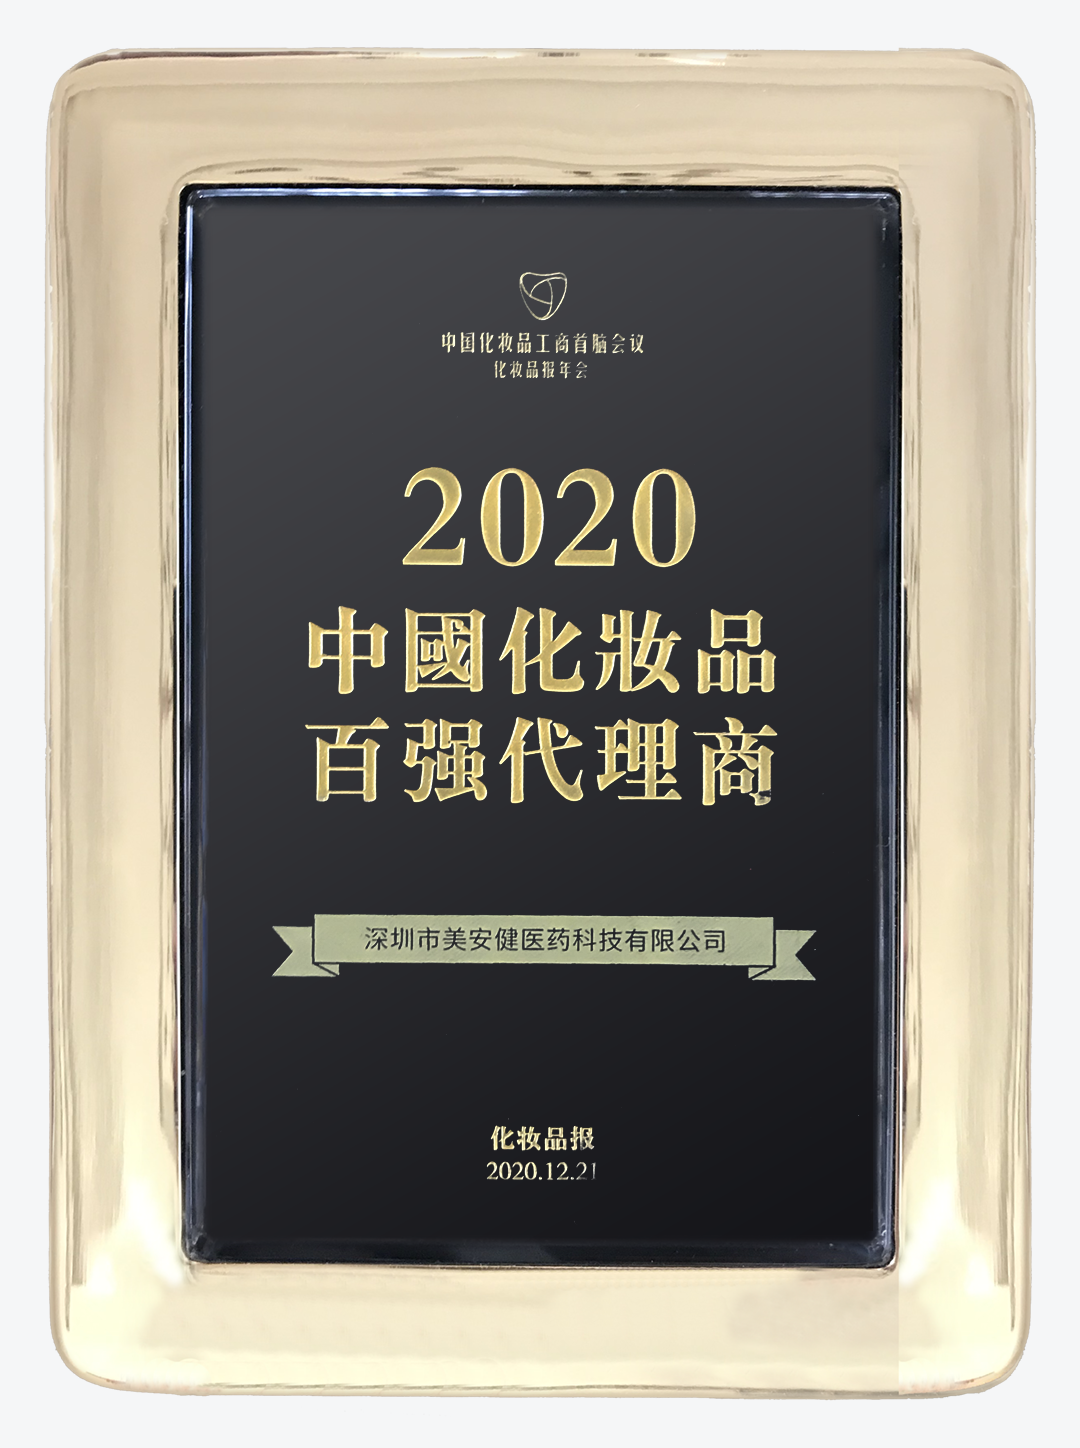 2020-化妆品报•中国化妆品百强代理商